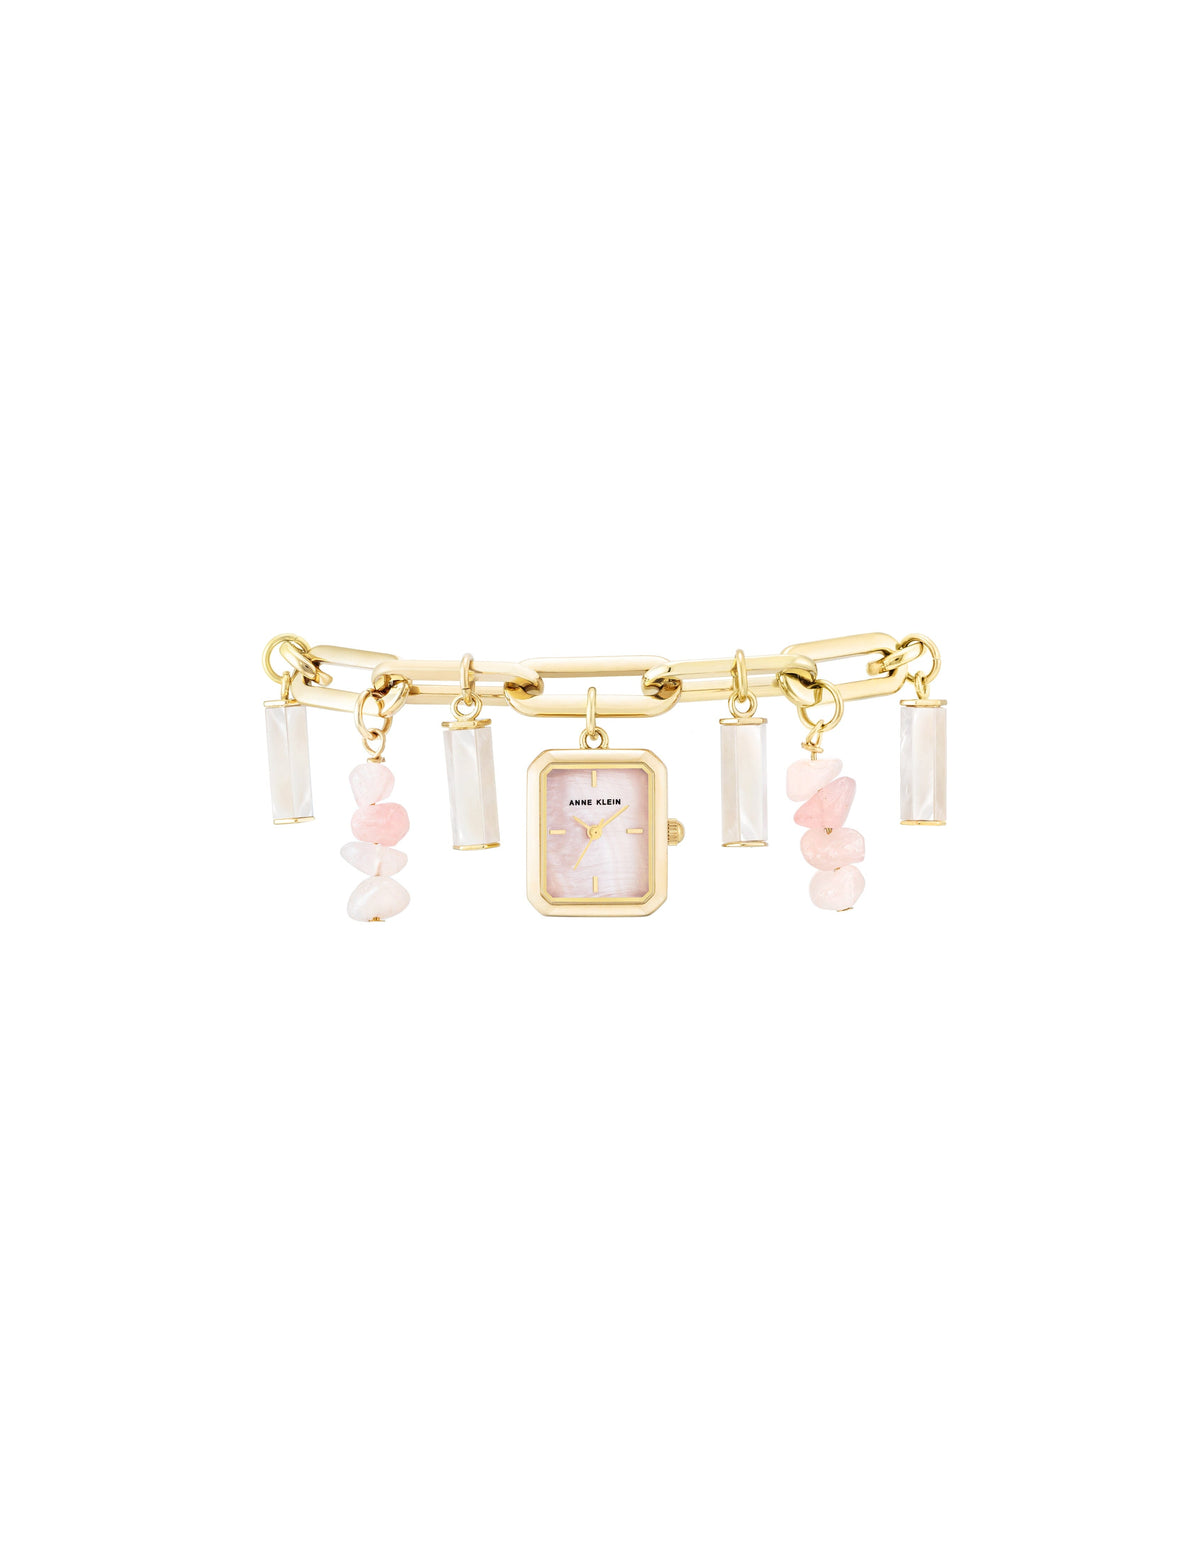 Anne Klein Rose quartz/Gold Gemstone Charm Bracelet Watch